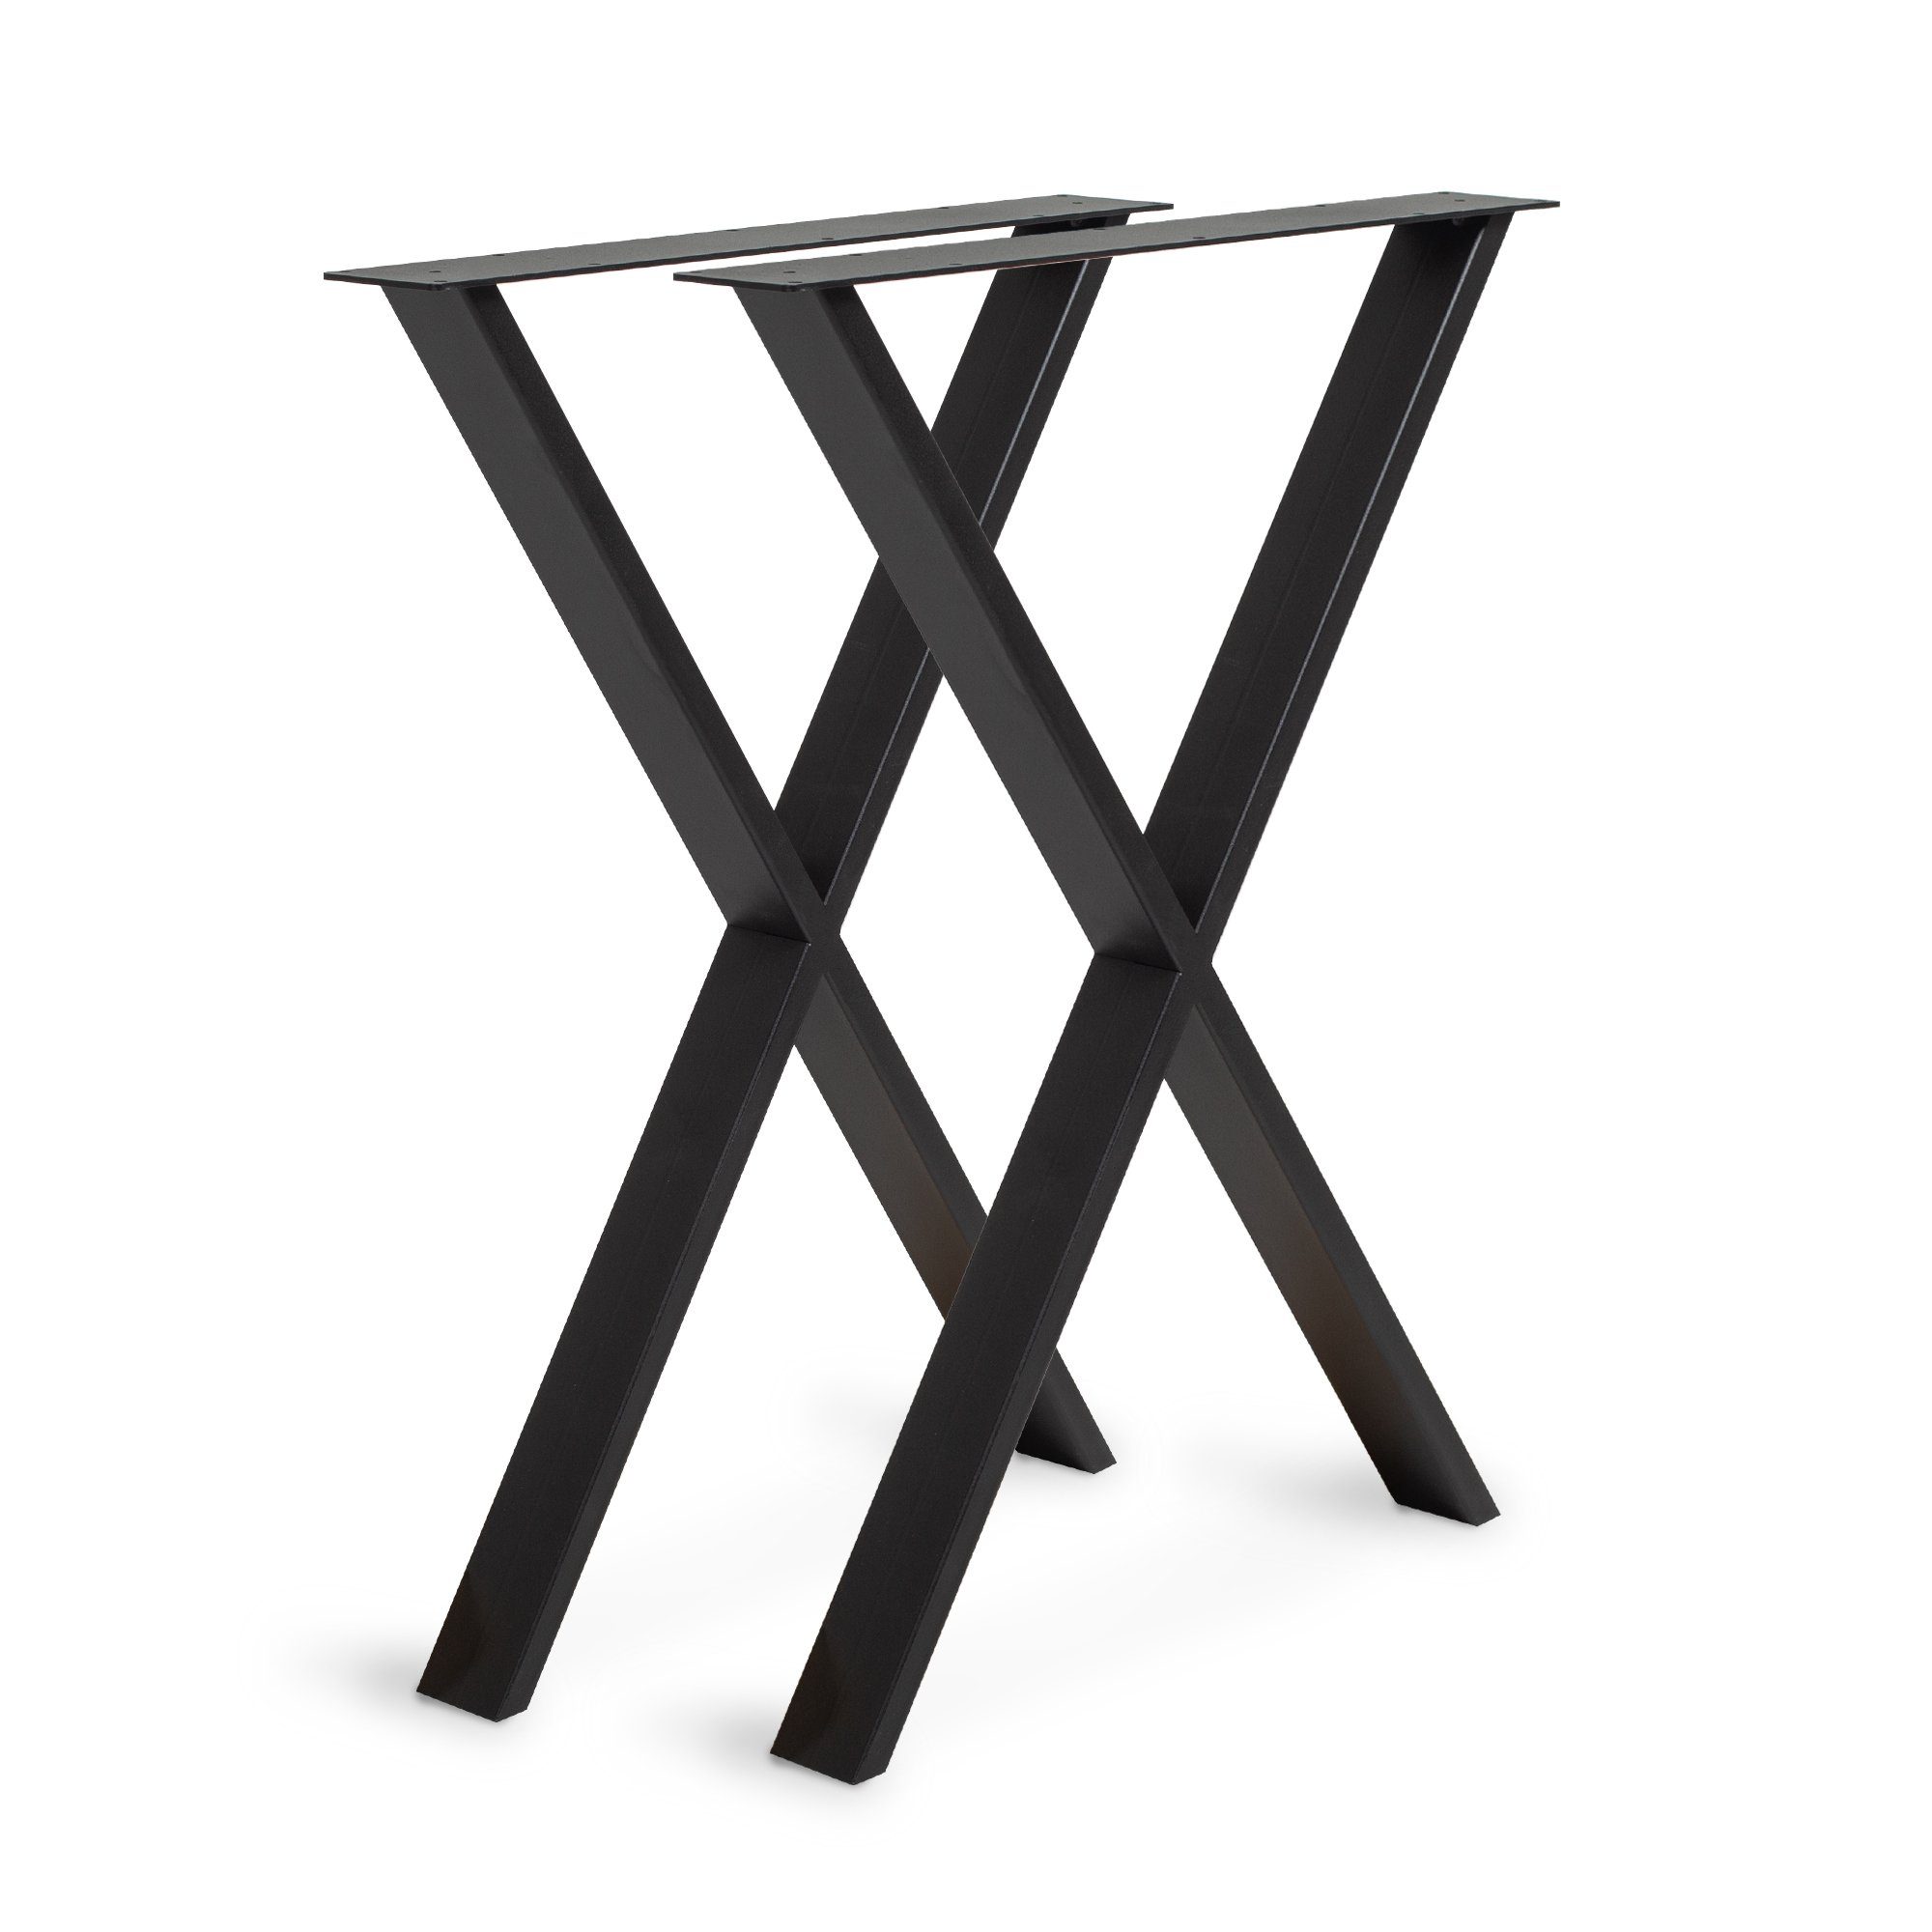 Rikmani Tischgestell Metallfüße 2 Stück Tischbeine Metall für Esstisch, Schreibtisch, Couch SR 46 - Schwarz